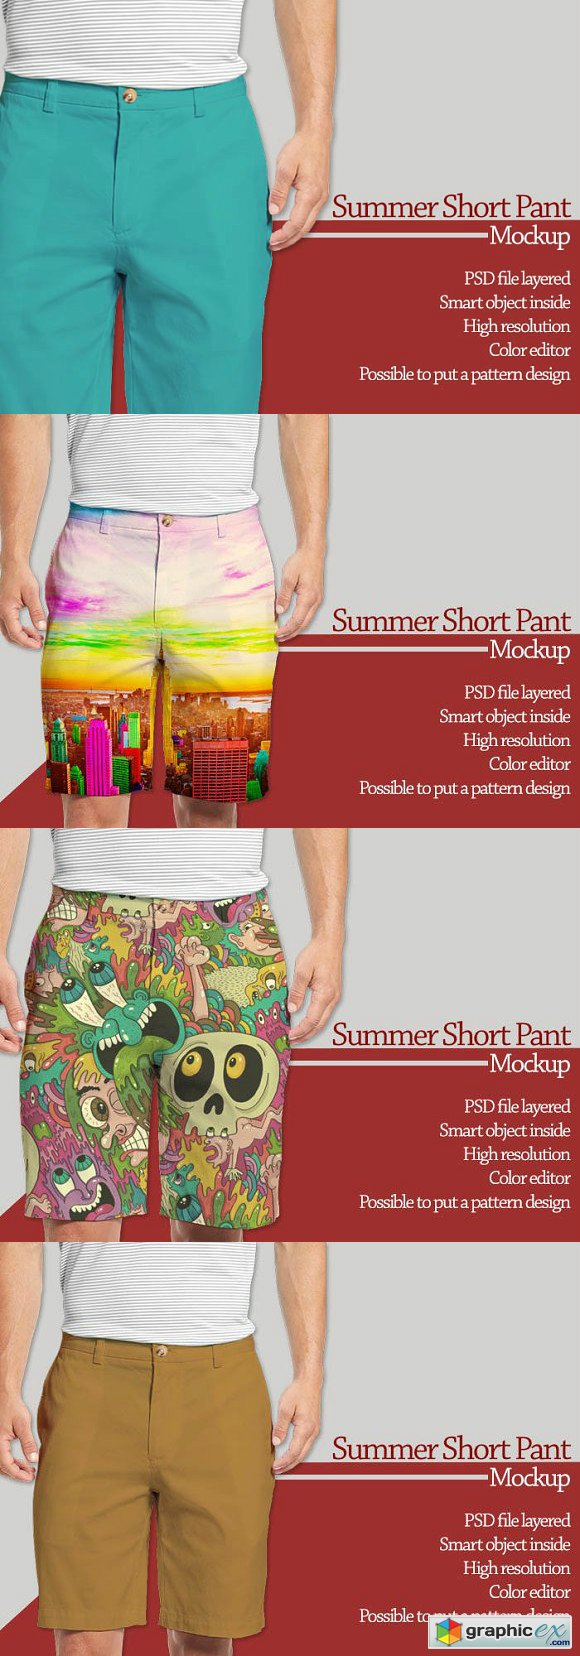 Summer Short Pant Mockup